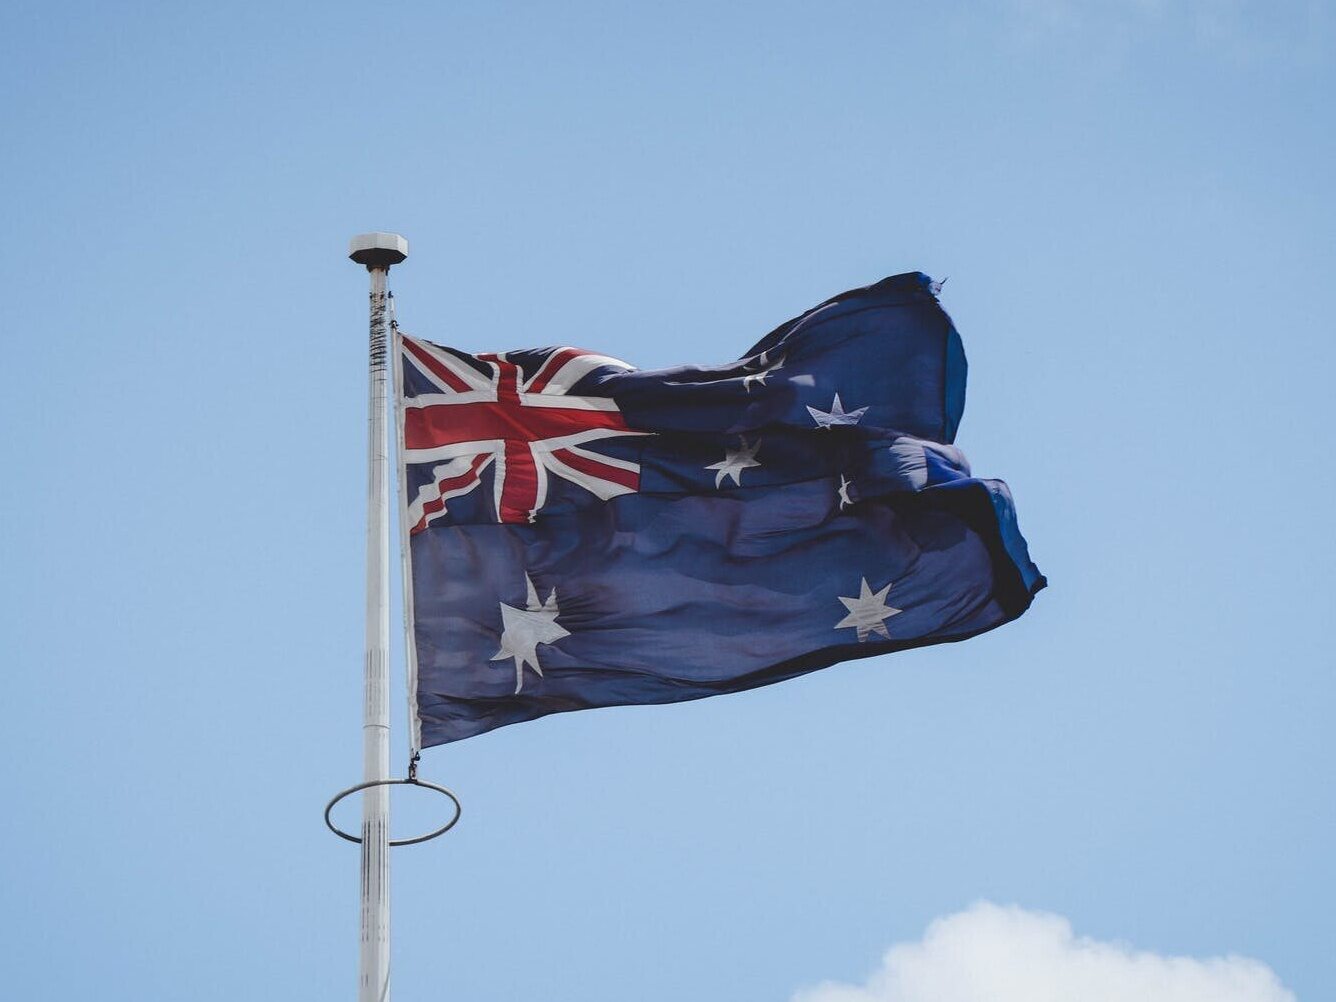 Pod jaką nazwą wystąpiły połączone reprezentacje Australii i Nowej Zelandii na Igrzyskach w 1908 i 1912 roku?